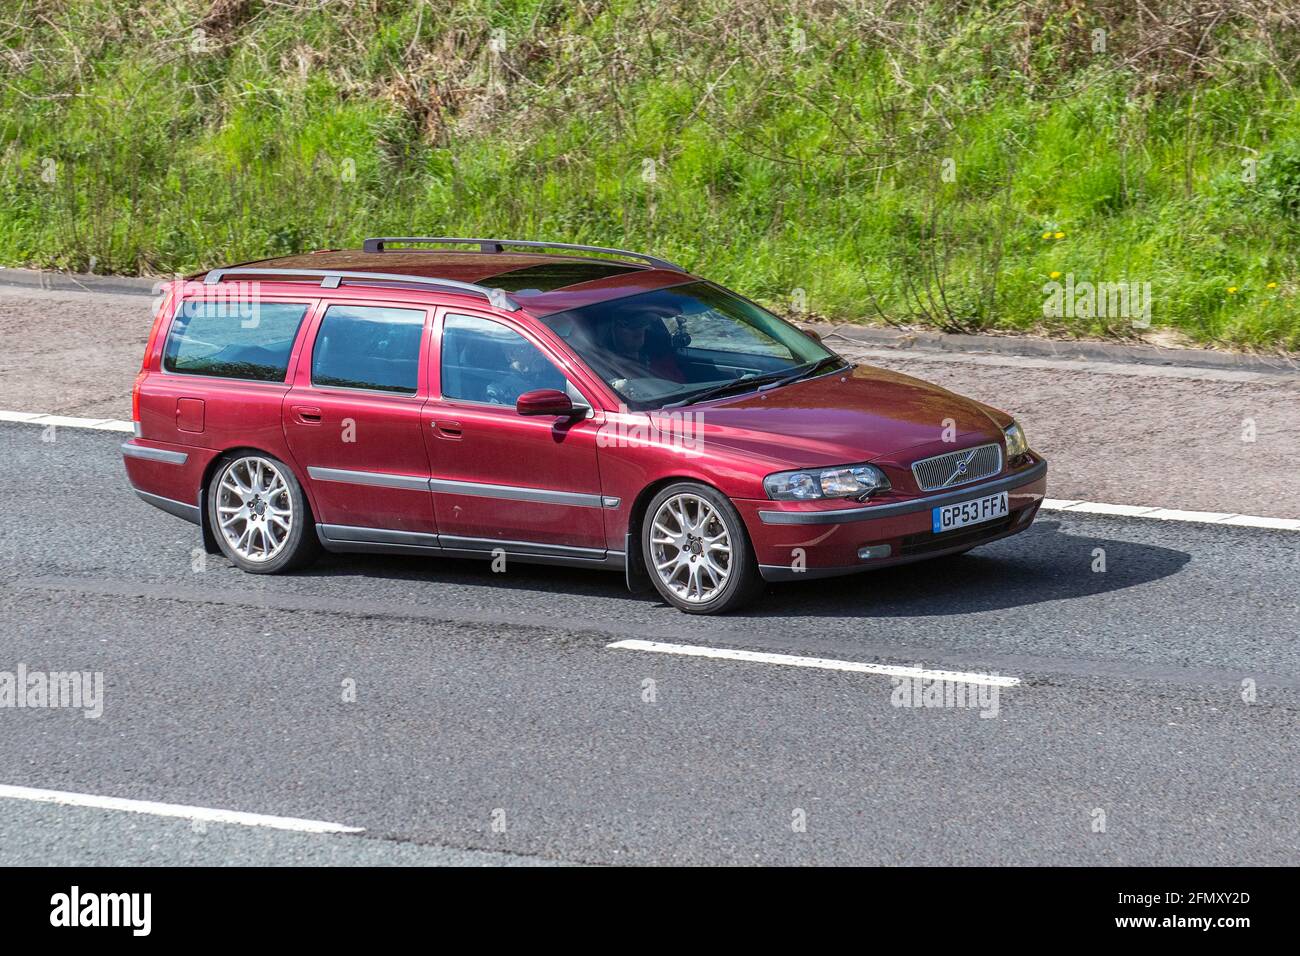 2004 roter Volvo V70 D5 se Kombi; Fahrzeugverkehr, bewegliche Fahrzeuge, Autos, Fahrzeug fahren auf britischen Straßen, Motoren, Fahren auf der Autobahn M6, britisches Straßennetz. Stockfoto